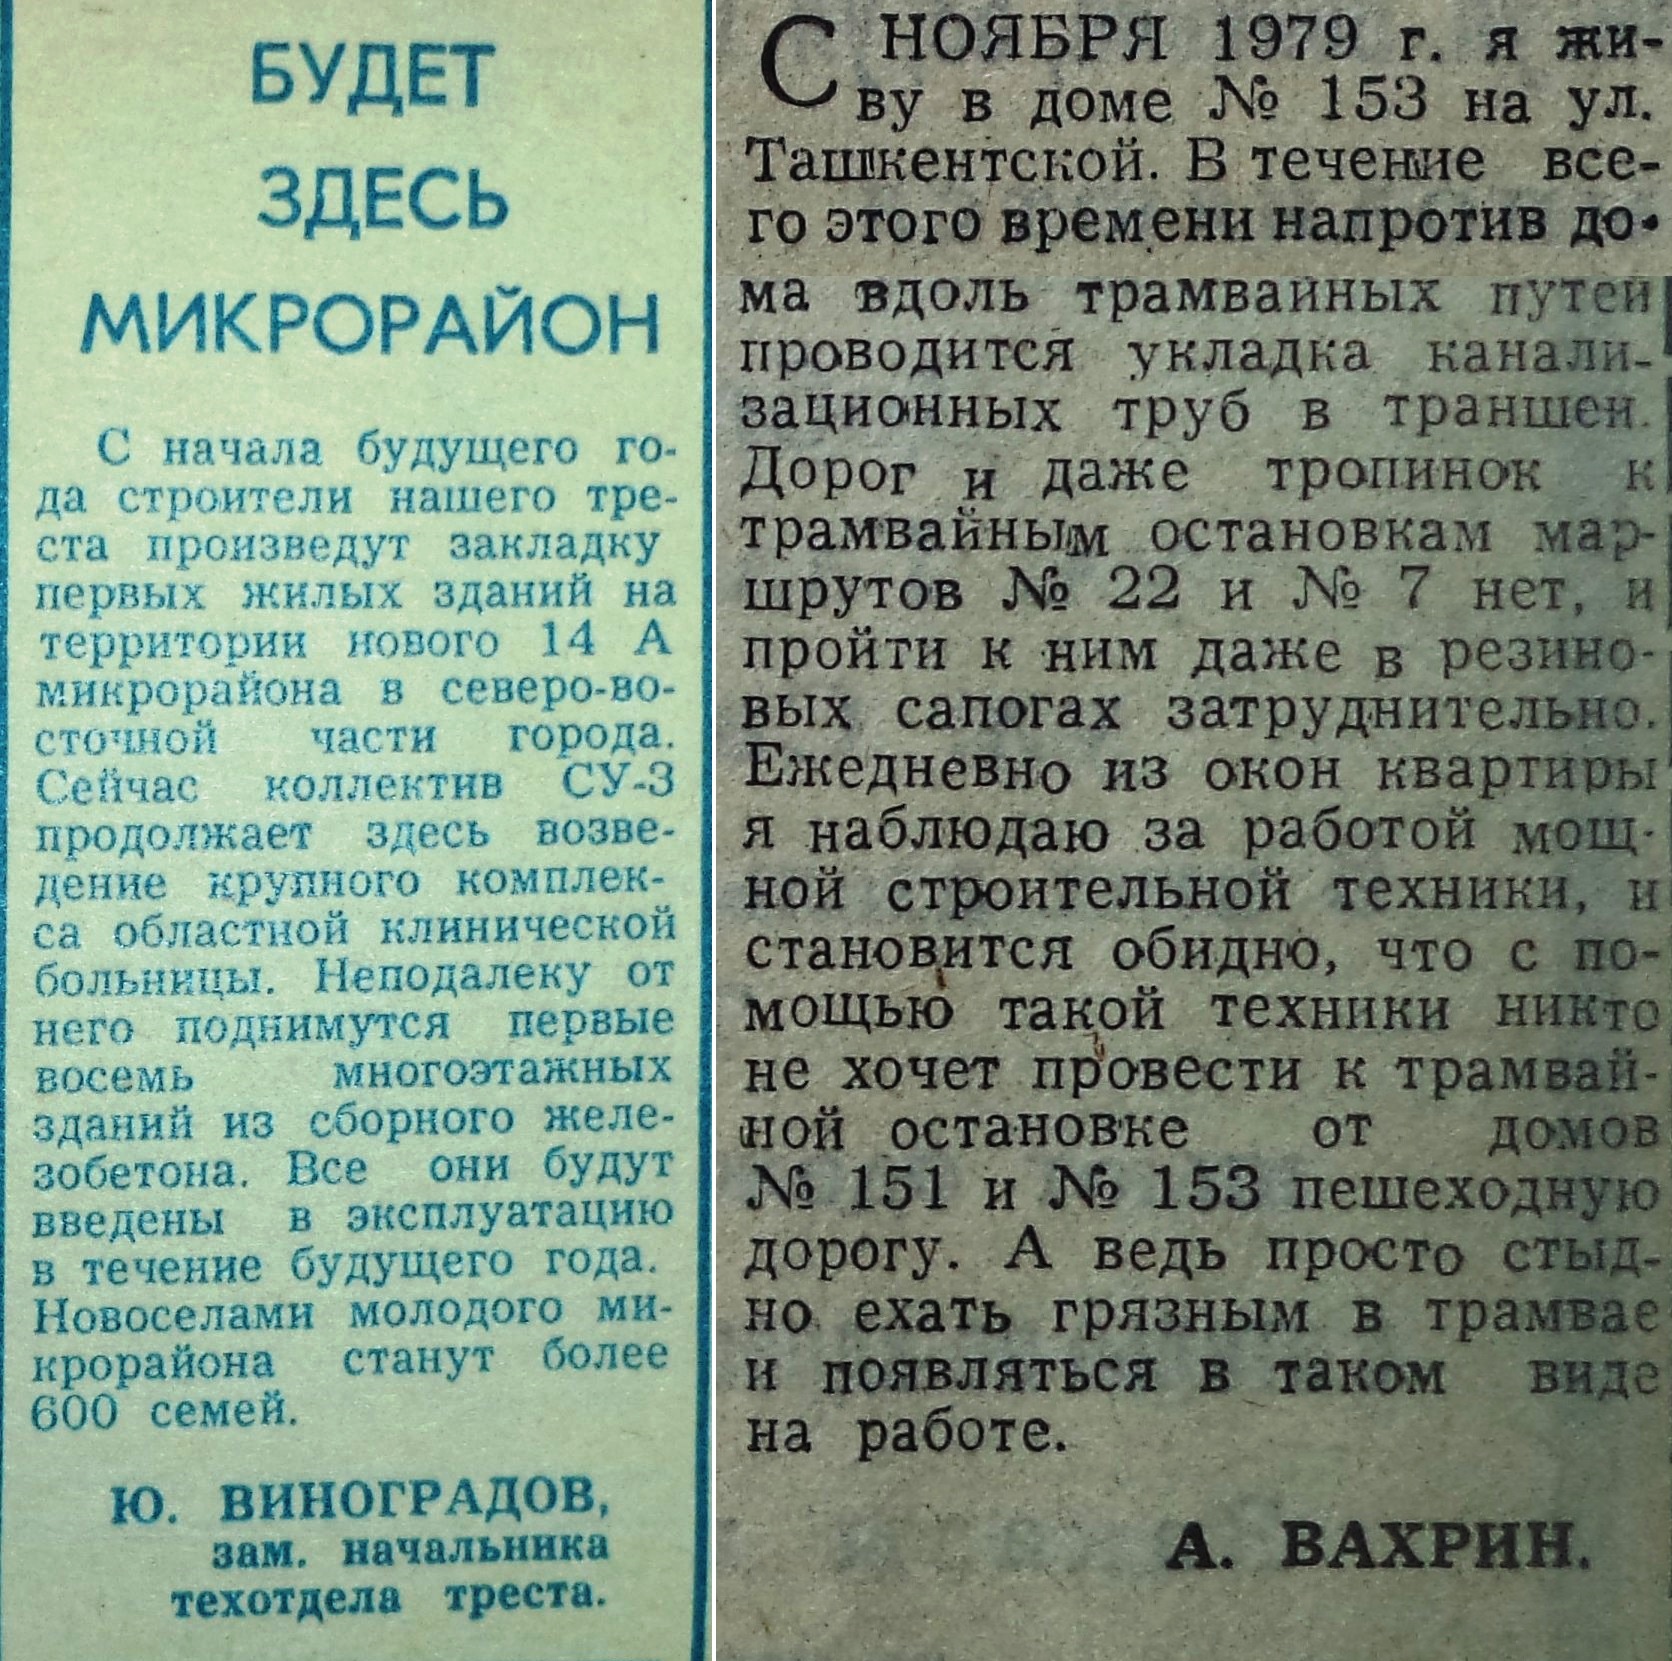 Ташкентская-ФОТО-59-Труд строителя-1977-28 декабря-1-min